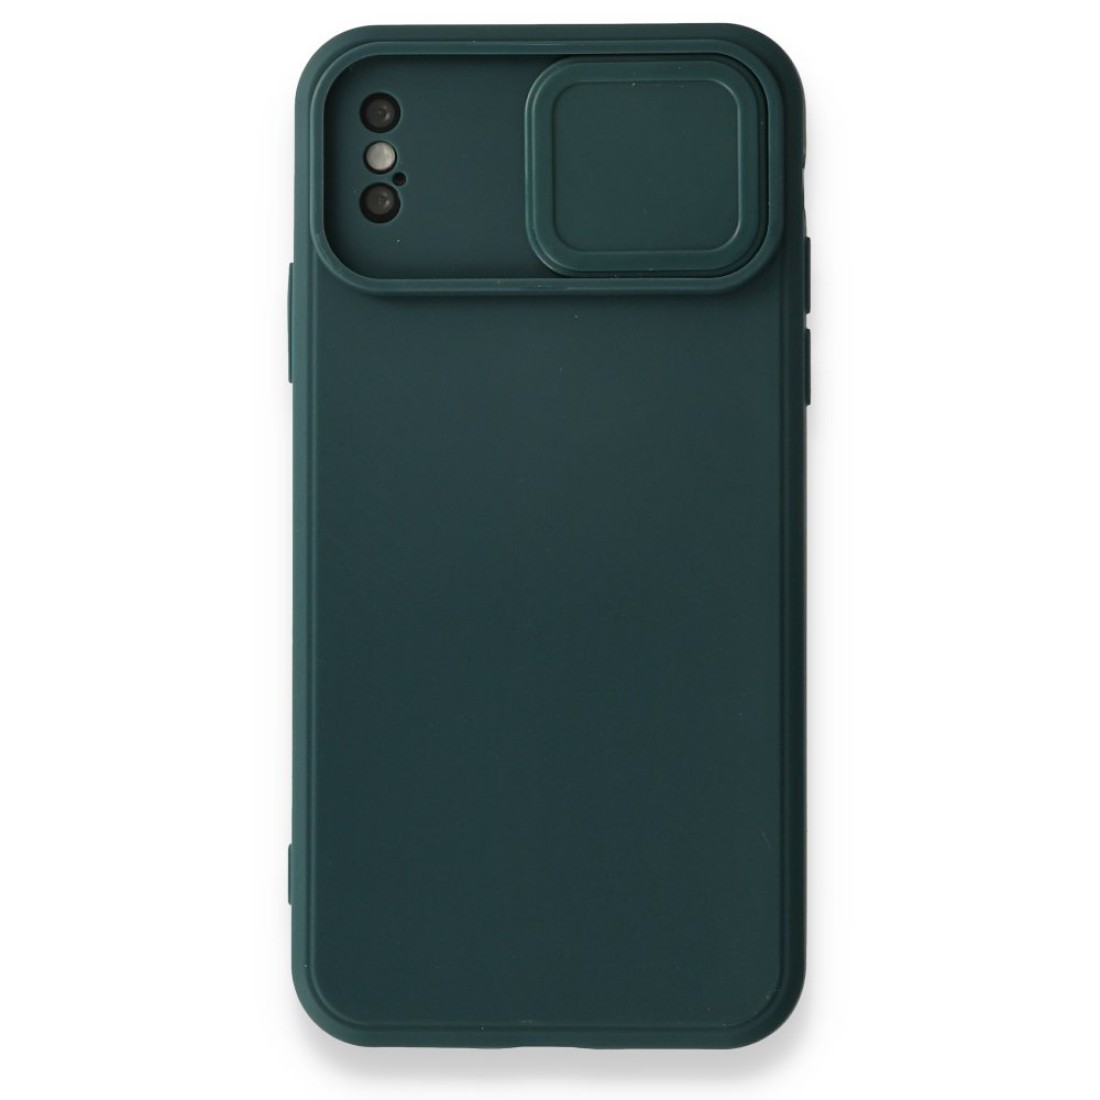 Apple iPhone XS Kılıf Color Lens Silikon - Yeşil